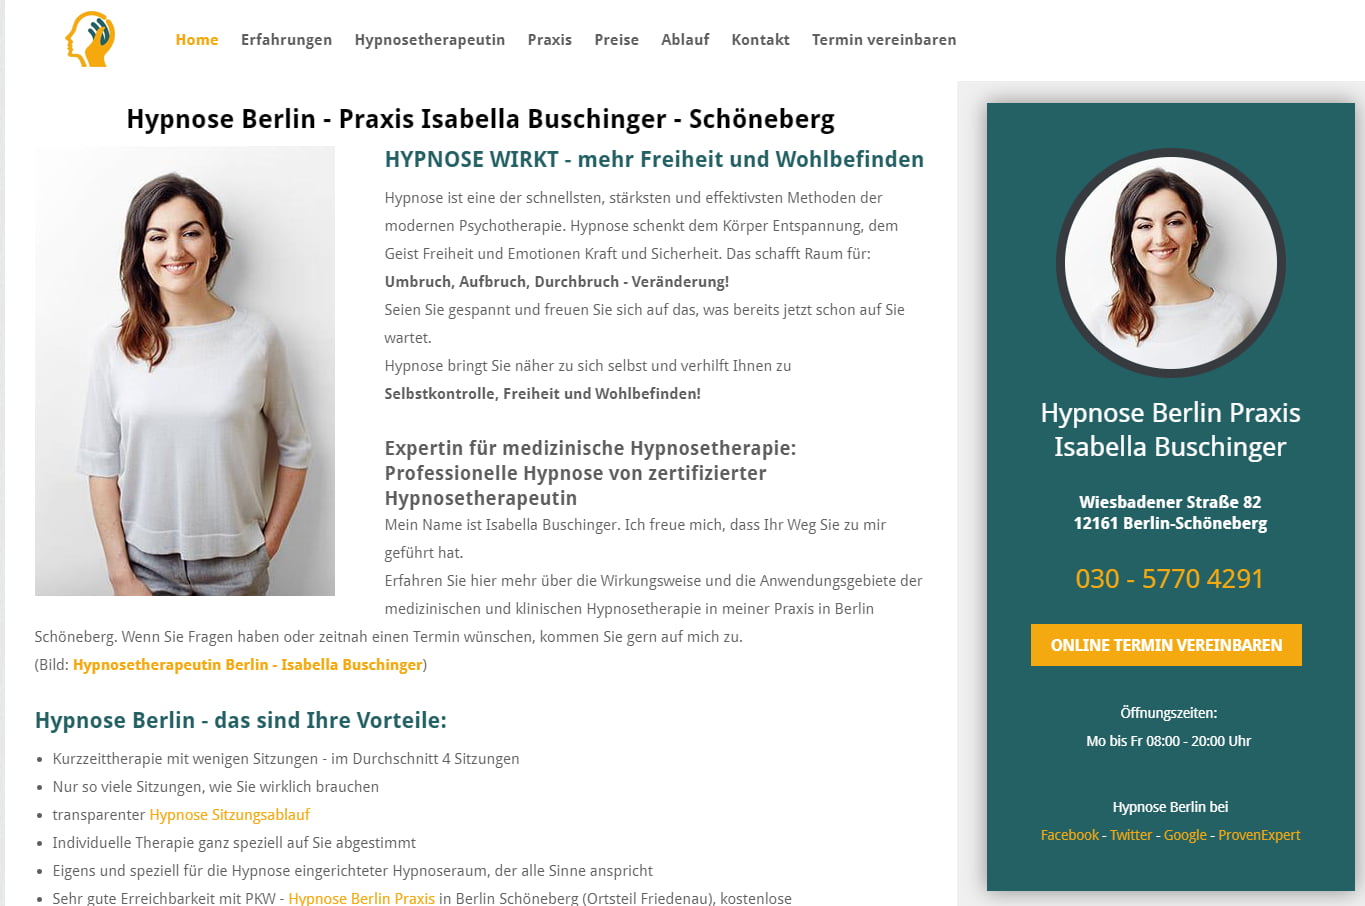 Details : Hypnose Berlin - Hypnosetherapie Isabella Buschinger